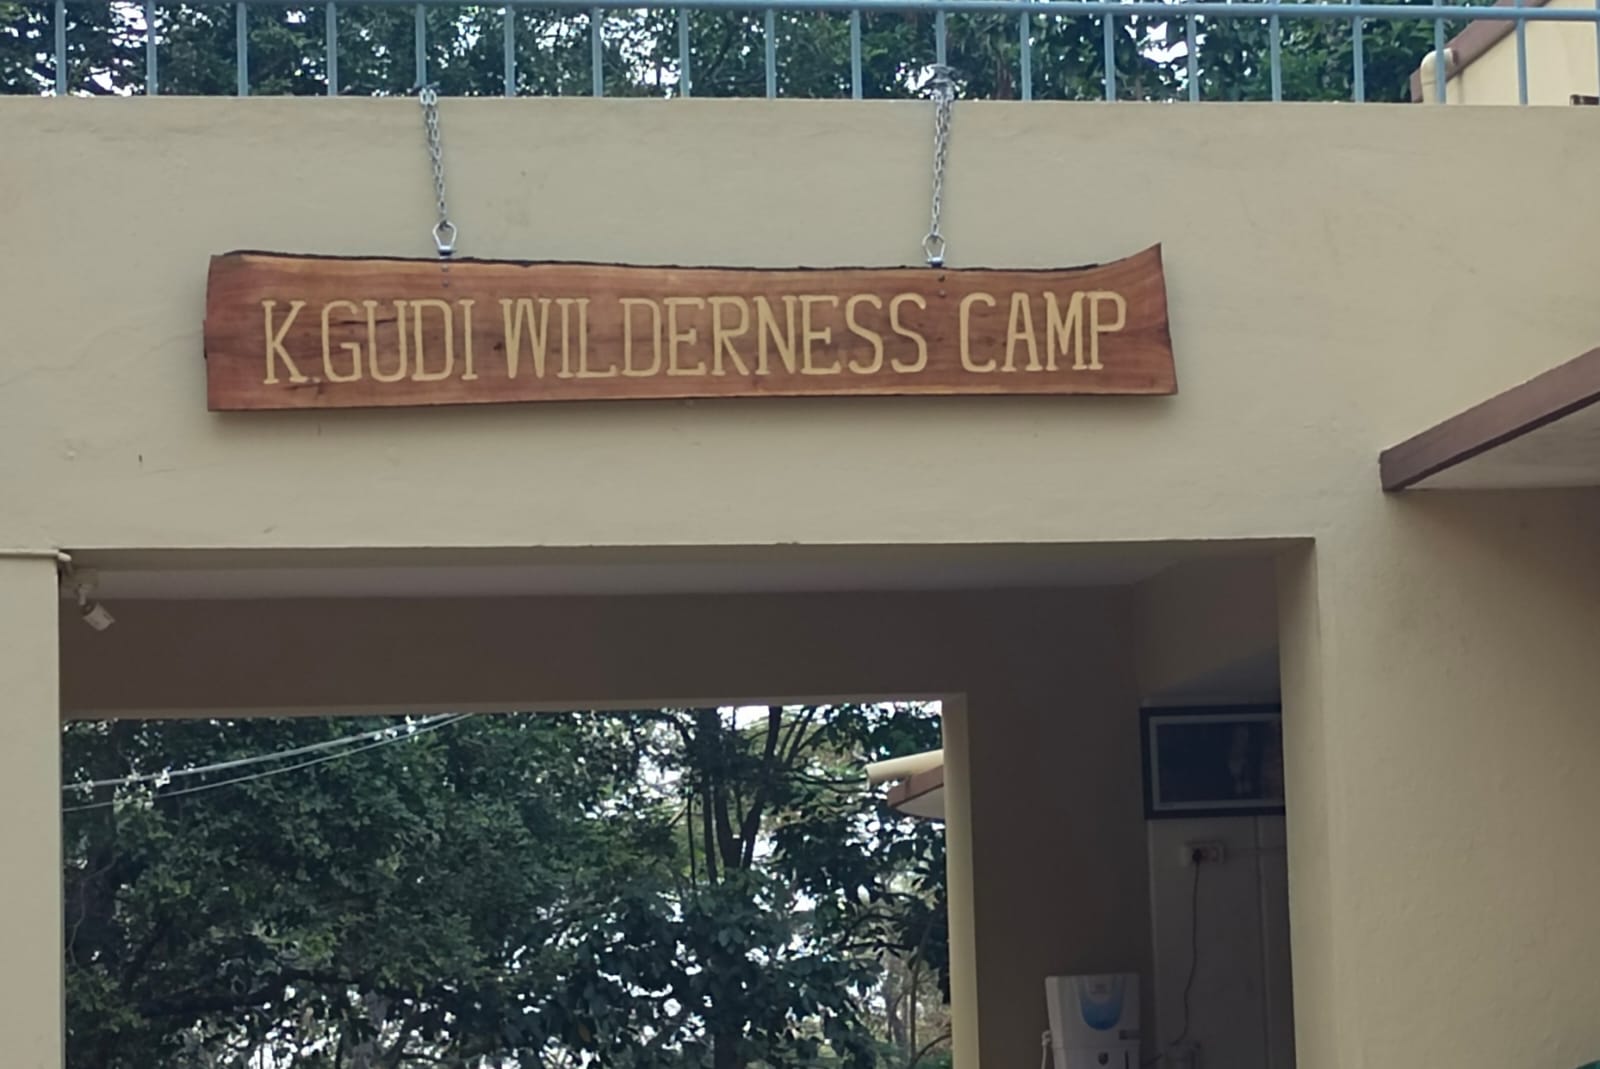 brt kgudi wilderness camp